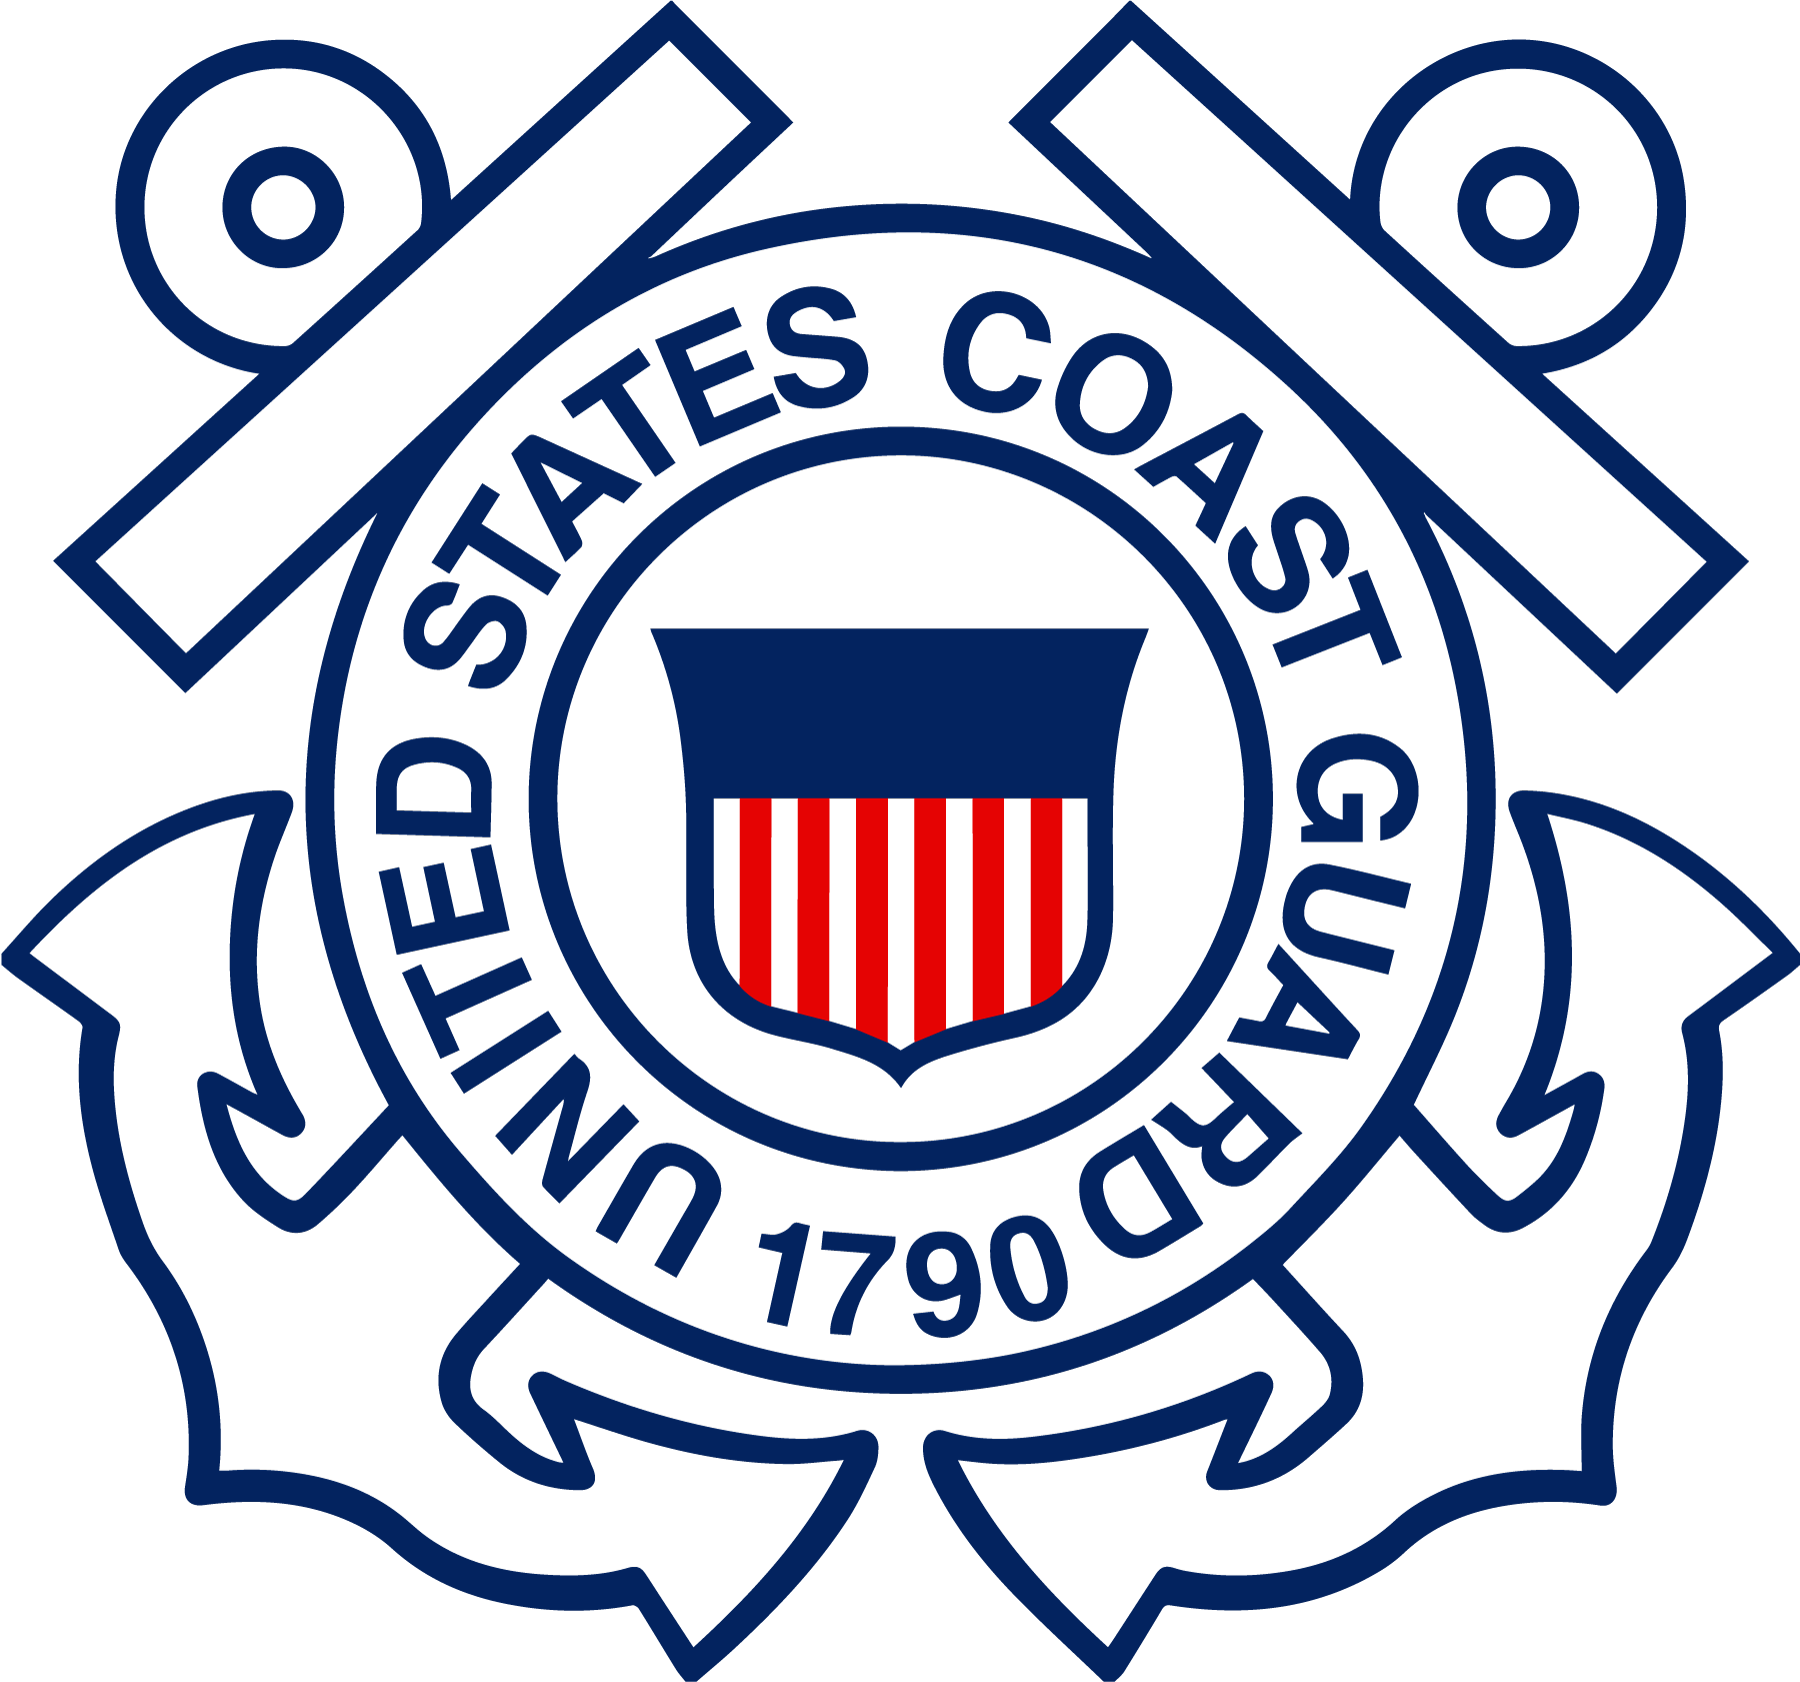 United Stated Coast Guard : 